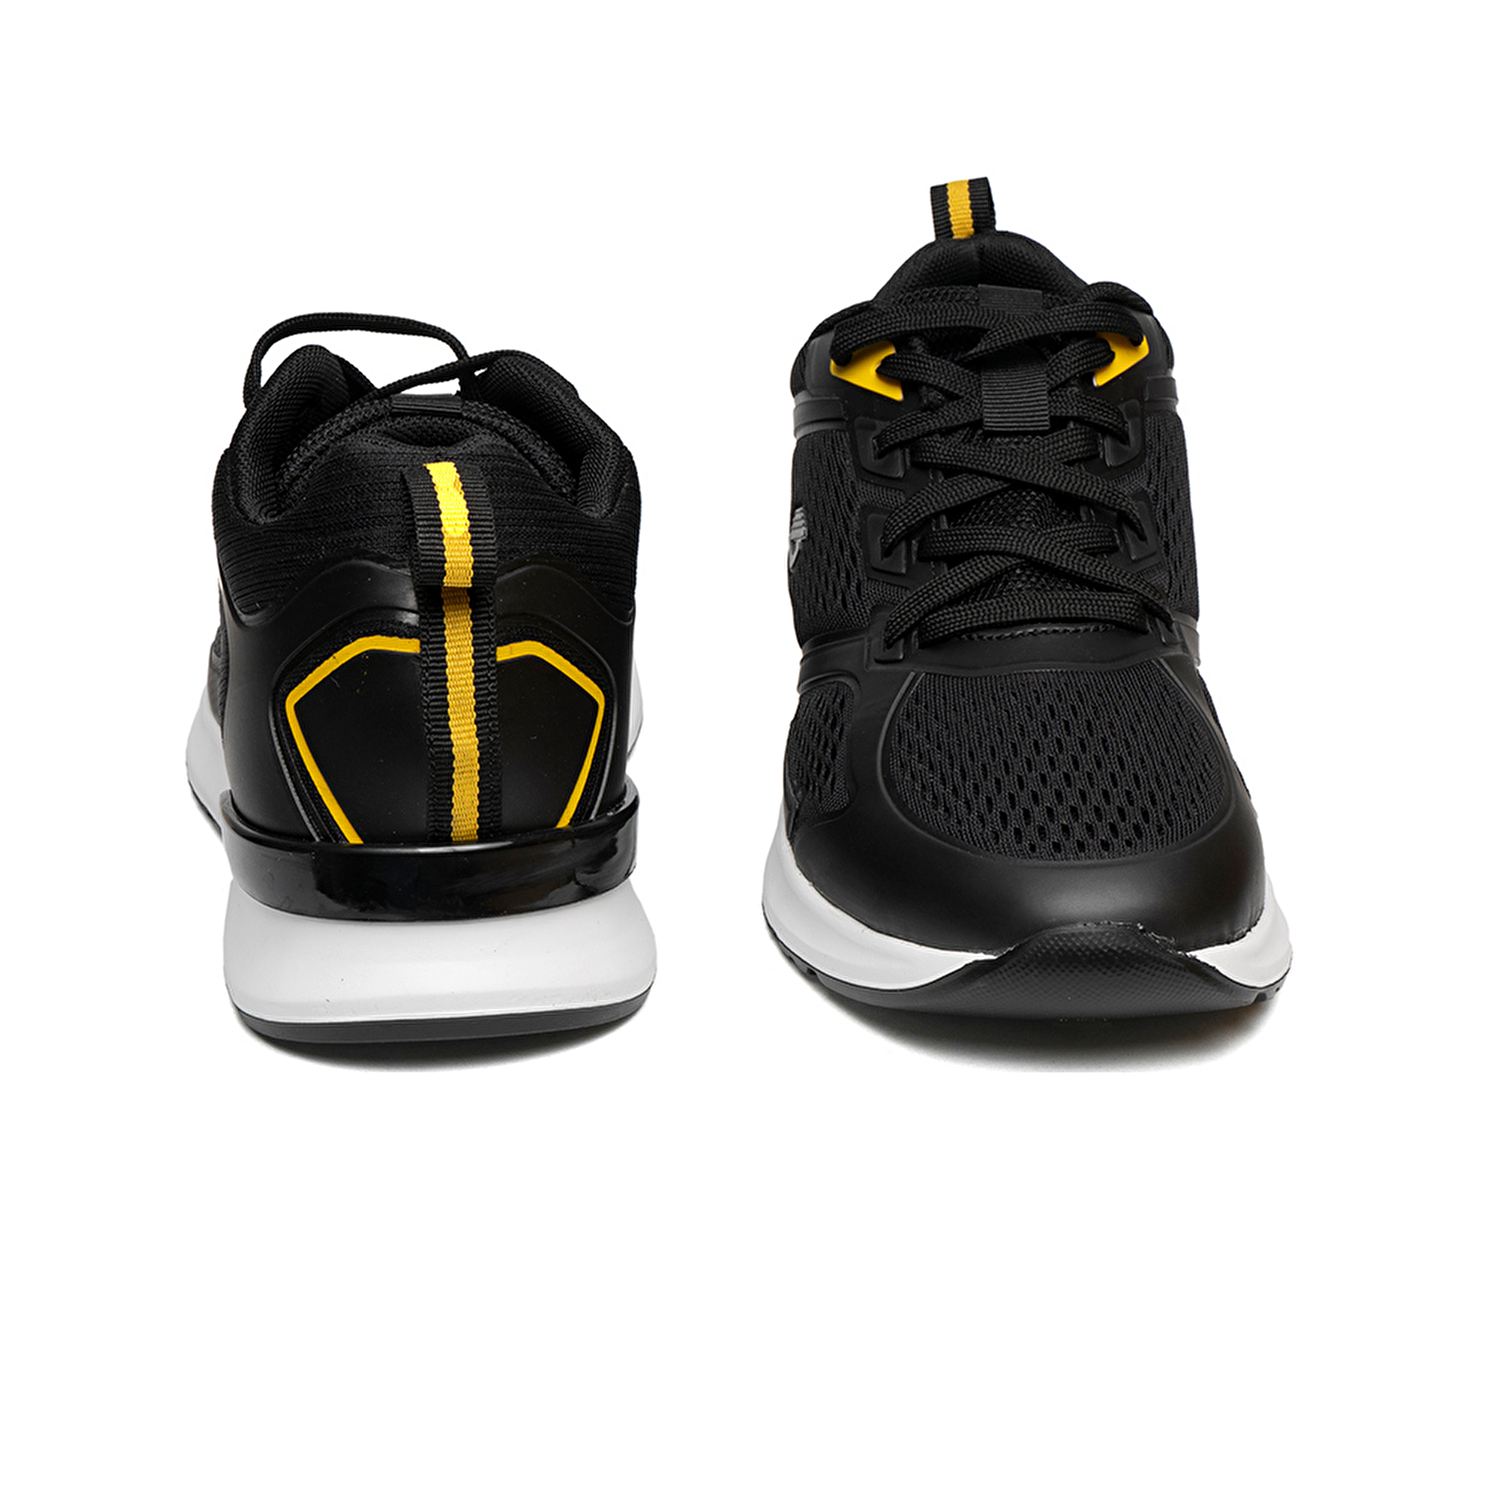 Erkek Siyah Sarı Hakiki Deri Sneaker Ayakkabı 2Y1SA14195-6